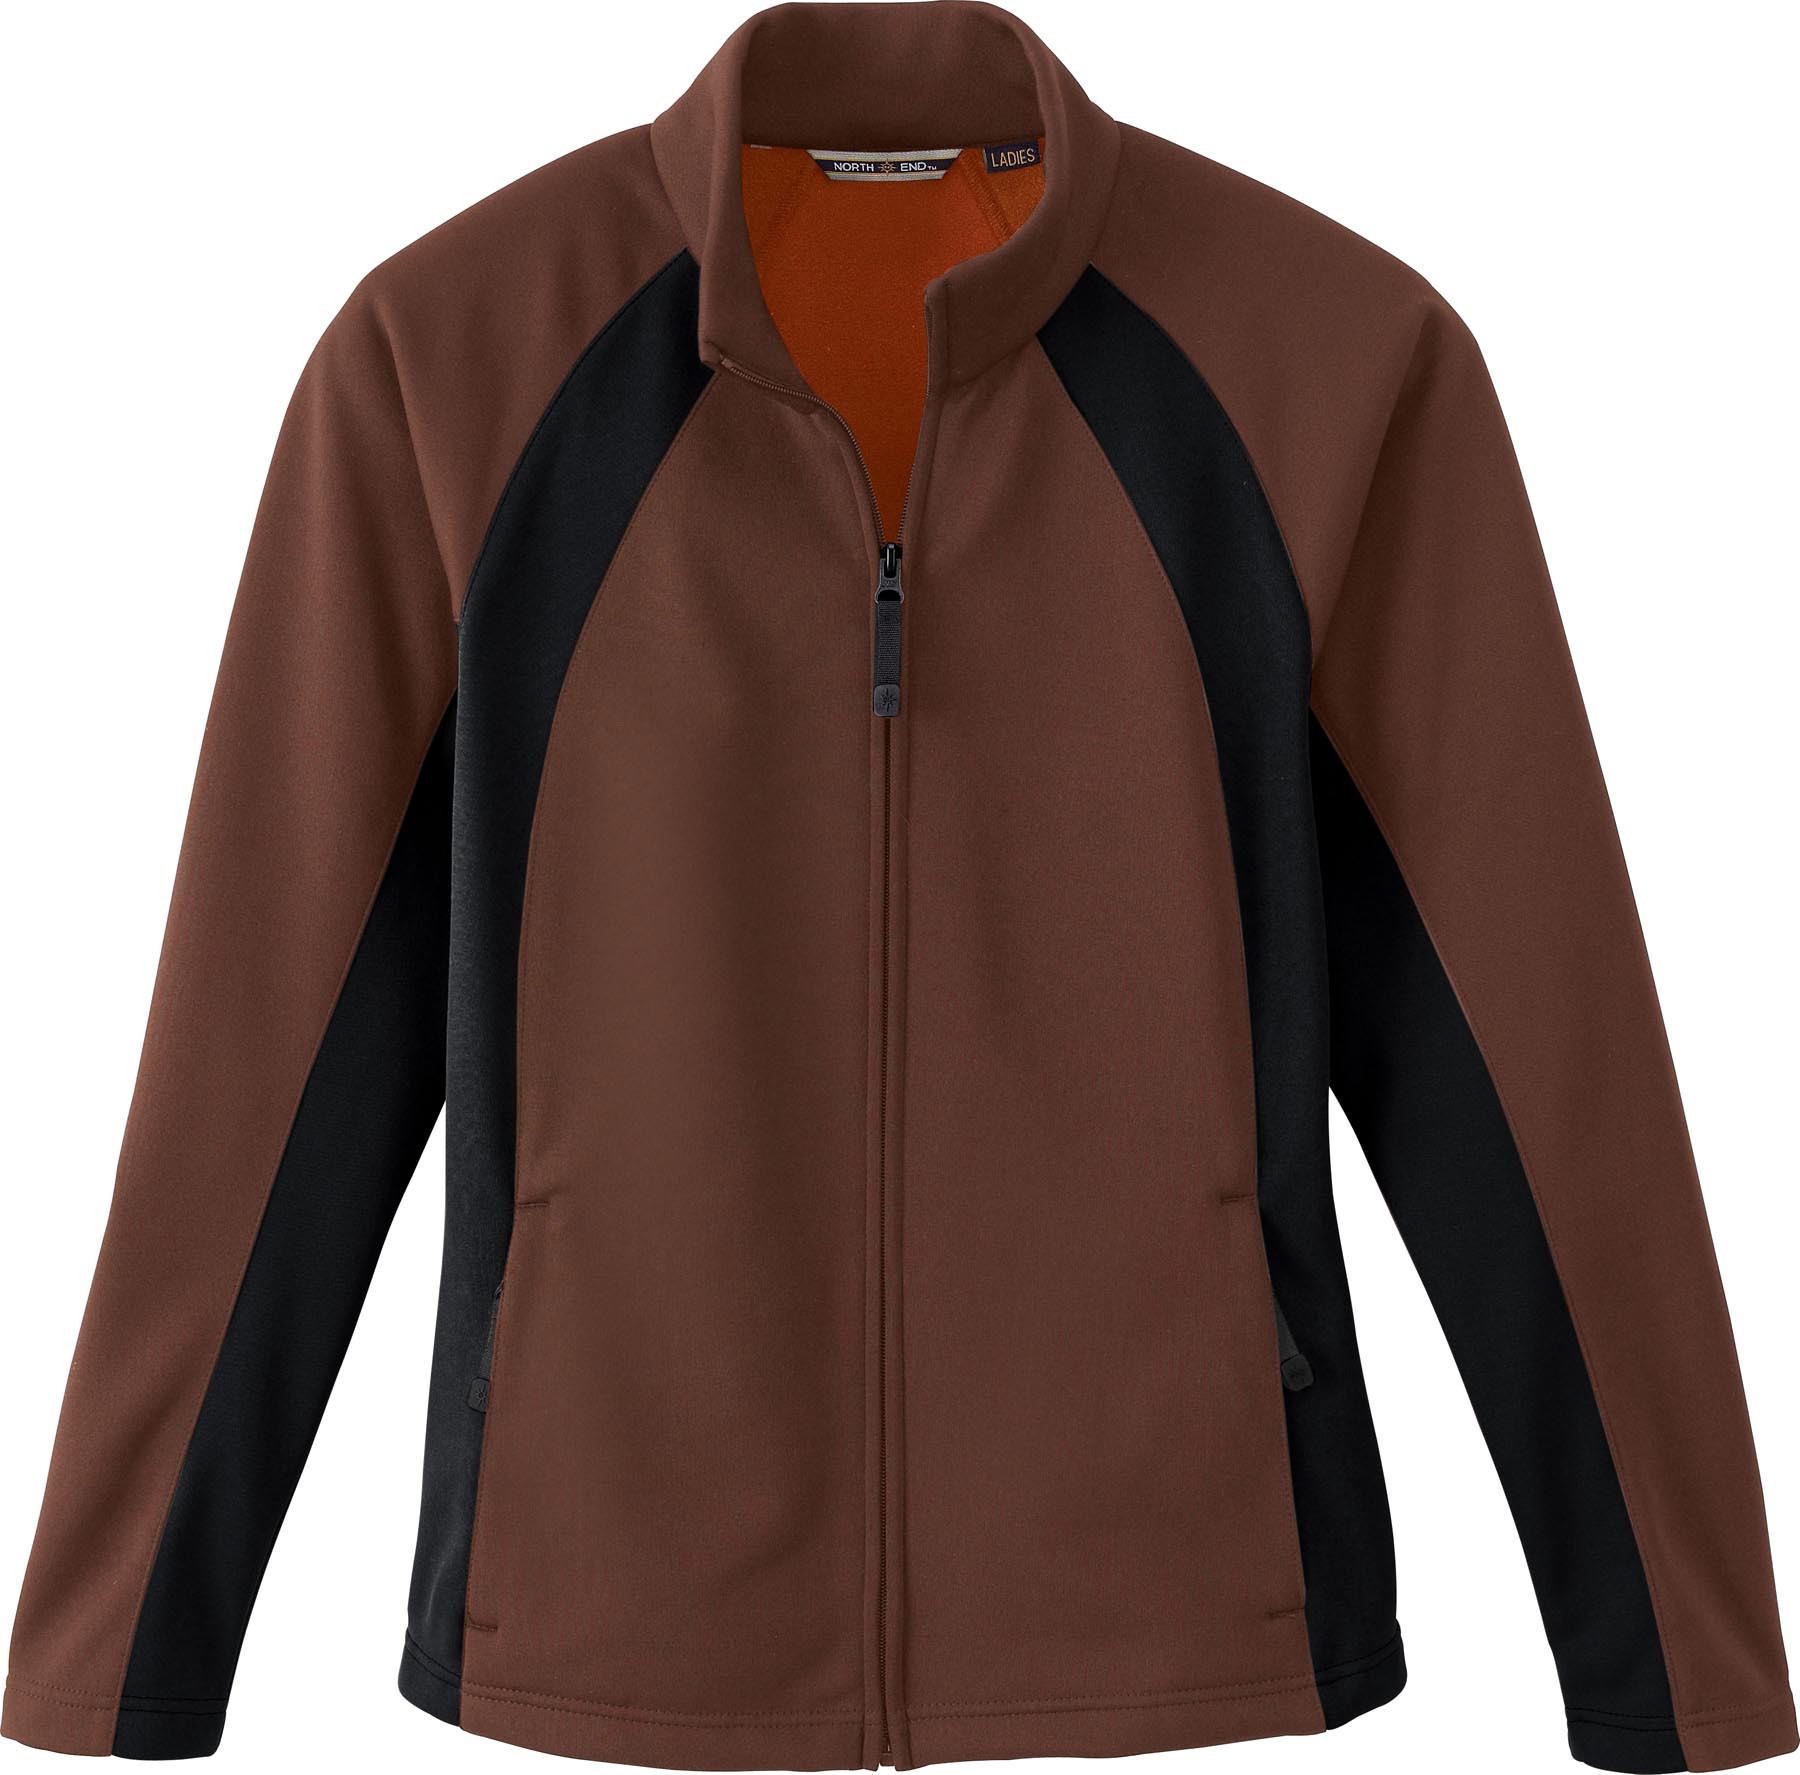 Ash City Bonded Fleece 78072 - Ladies' Bonded Fleece Jacket